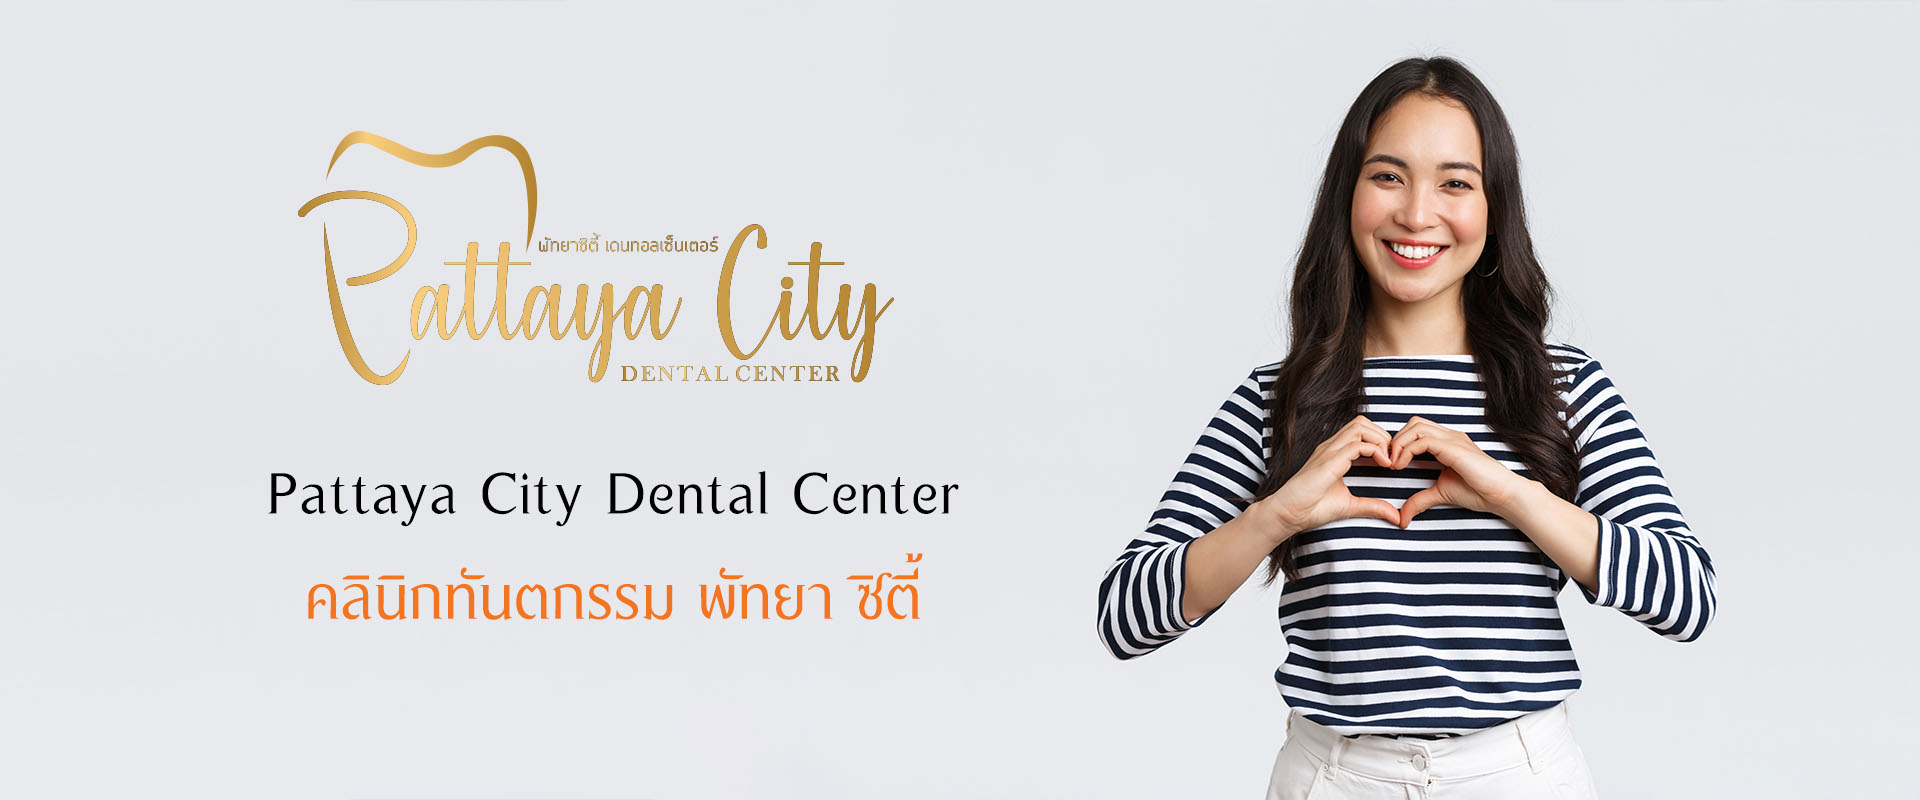 คลินิกทันตกรรม พัทยา, Pattaya City Dental Center, รับทำฟัน, จัดฟัน, รักษารากฟัน Root Canal Treatment